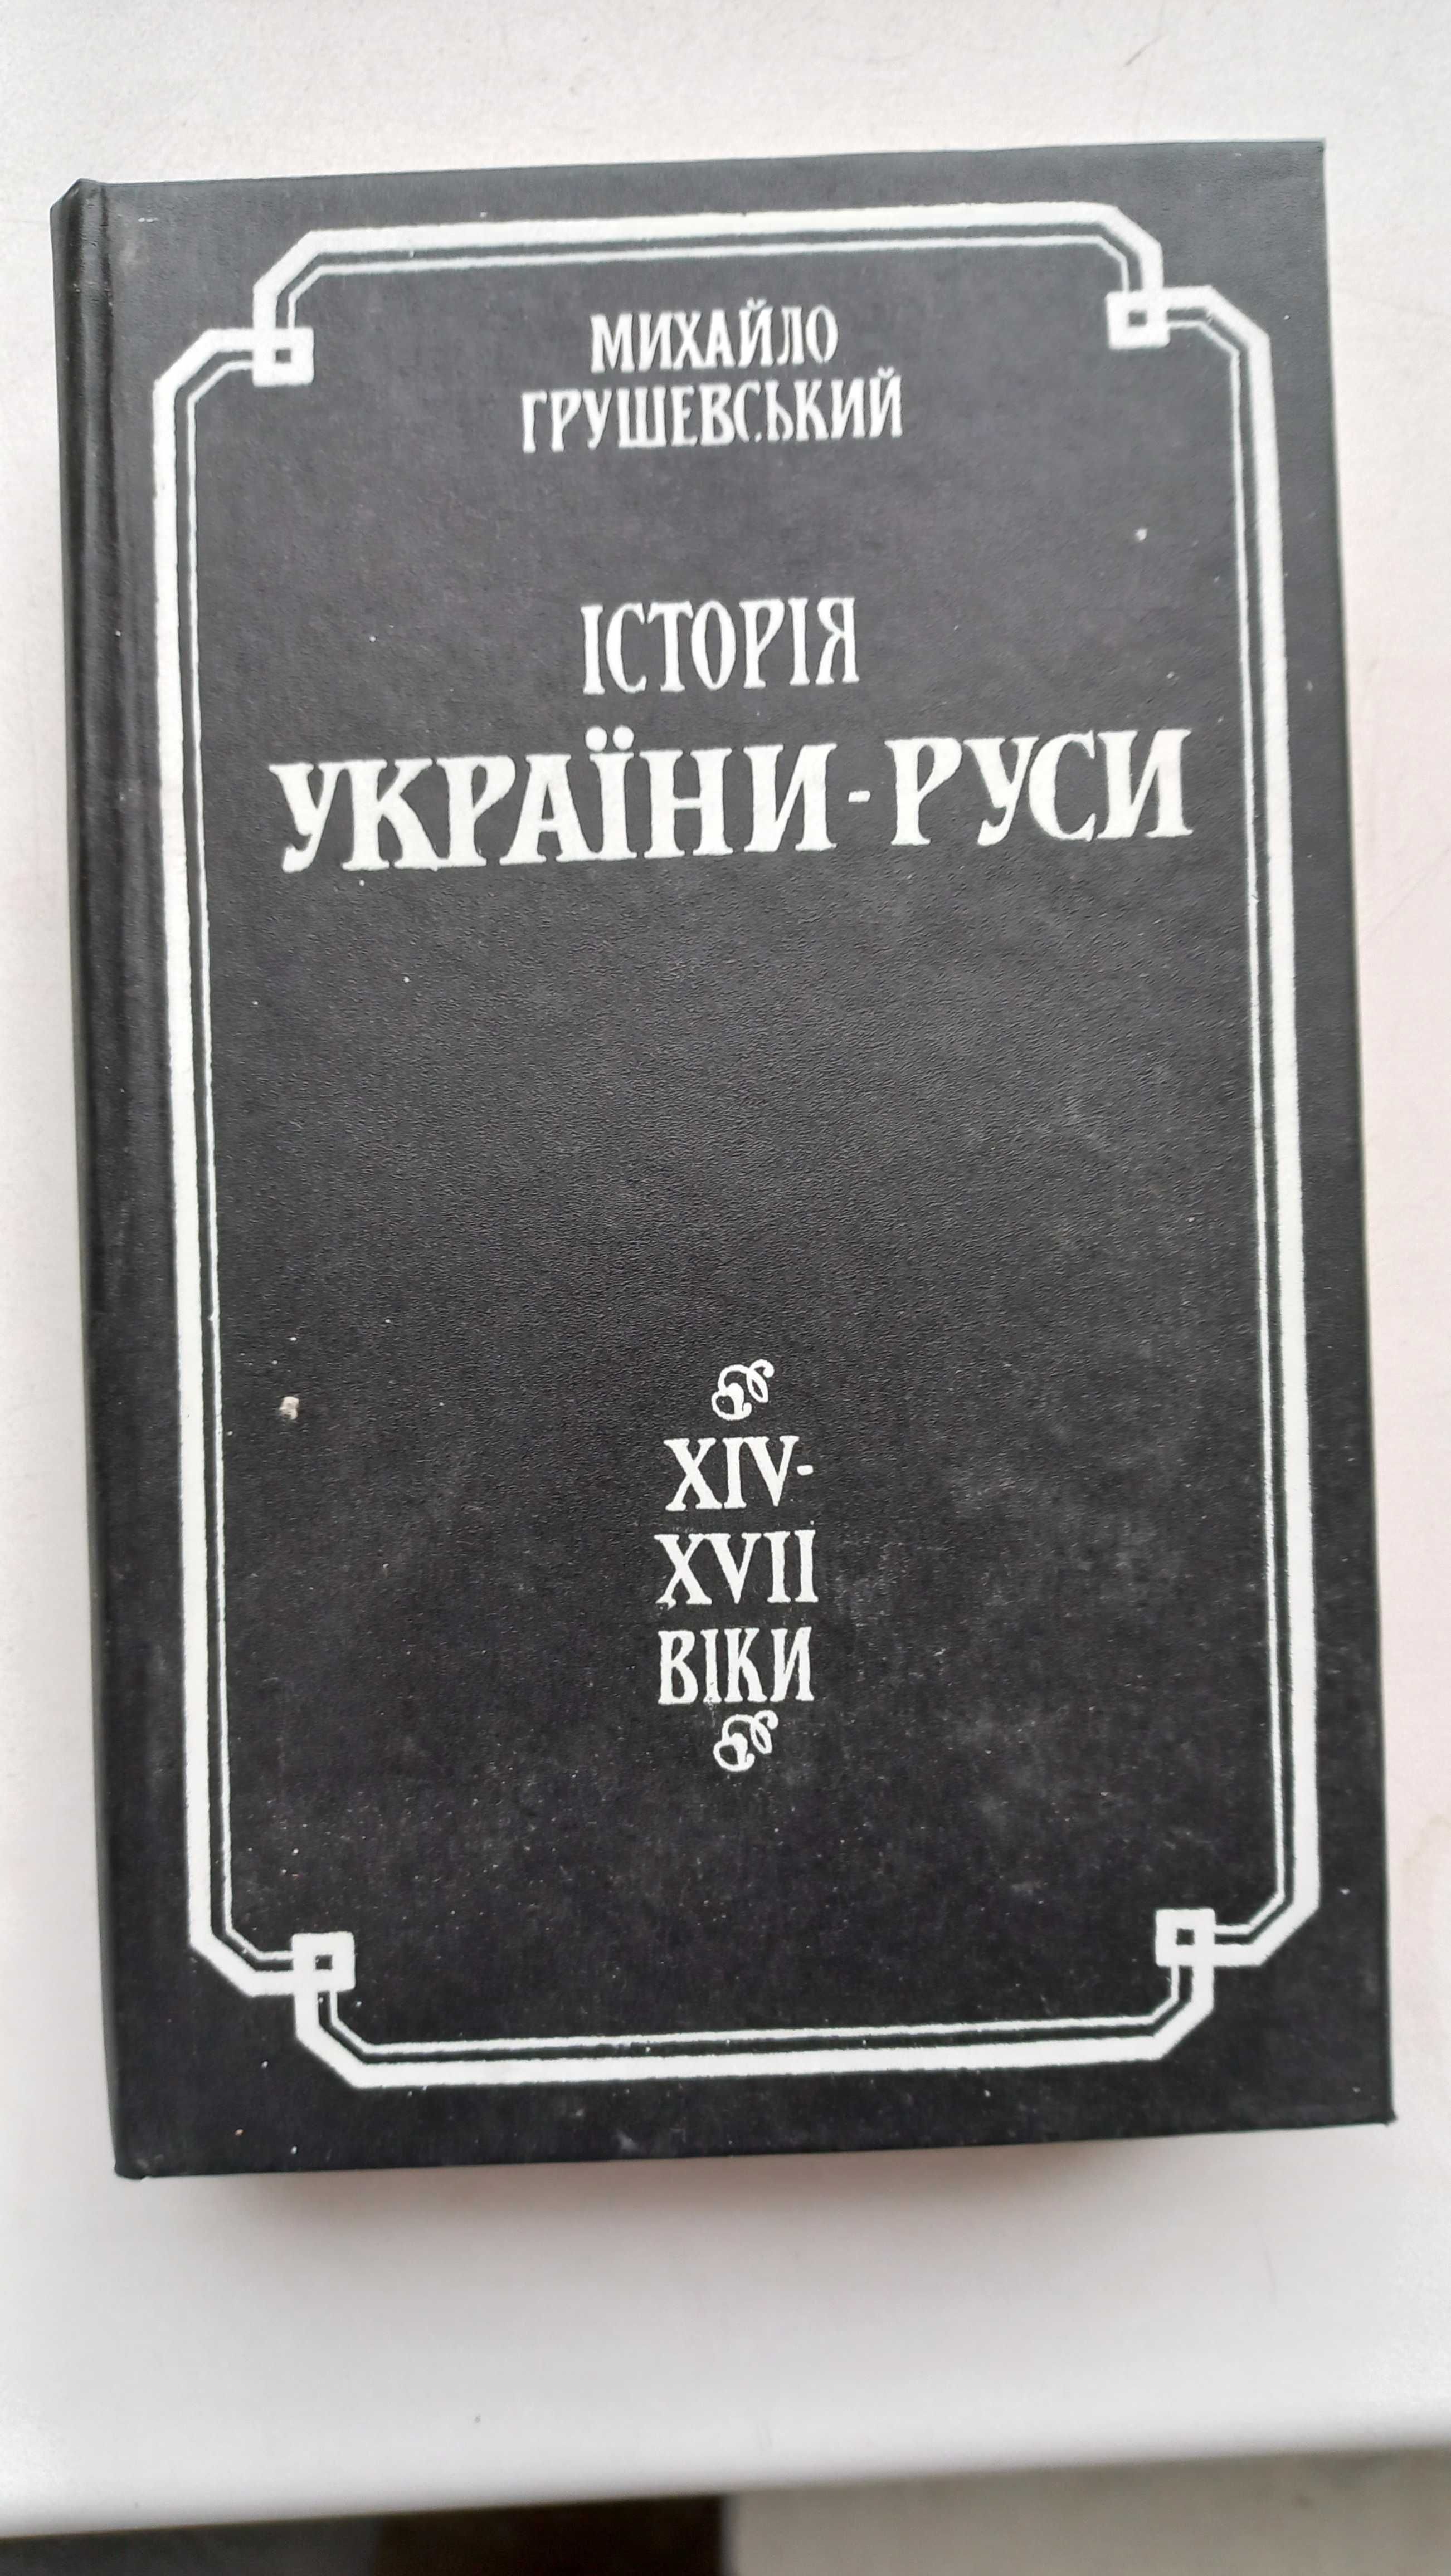 М. Грушевський "Історія України-Руси" XIV-XVII віки